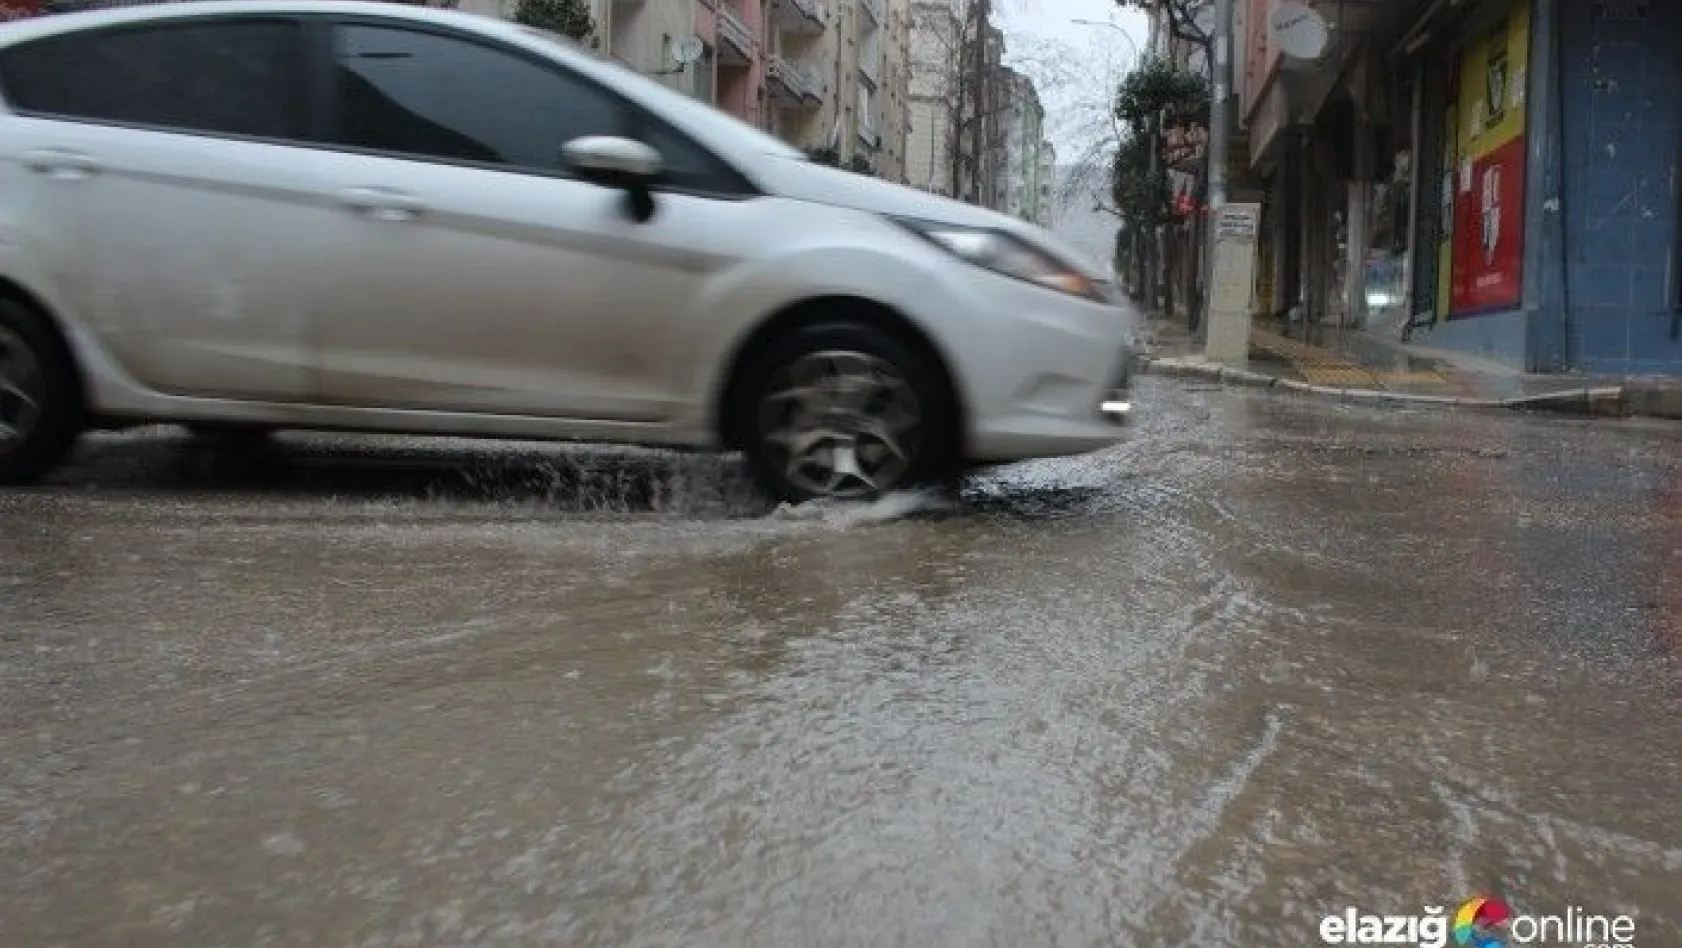 Elazığ'da şiddetli yağış etkili oldu